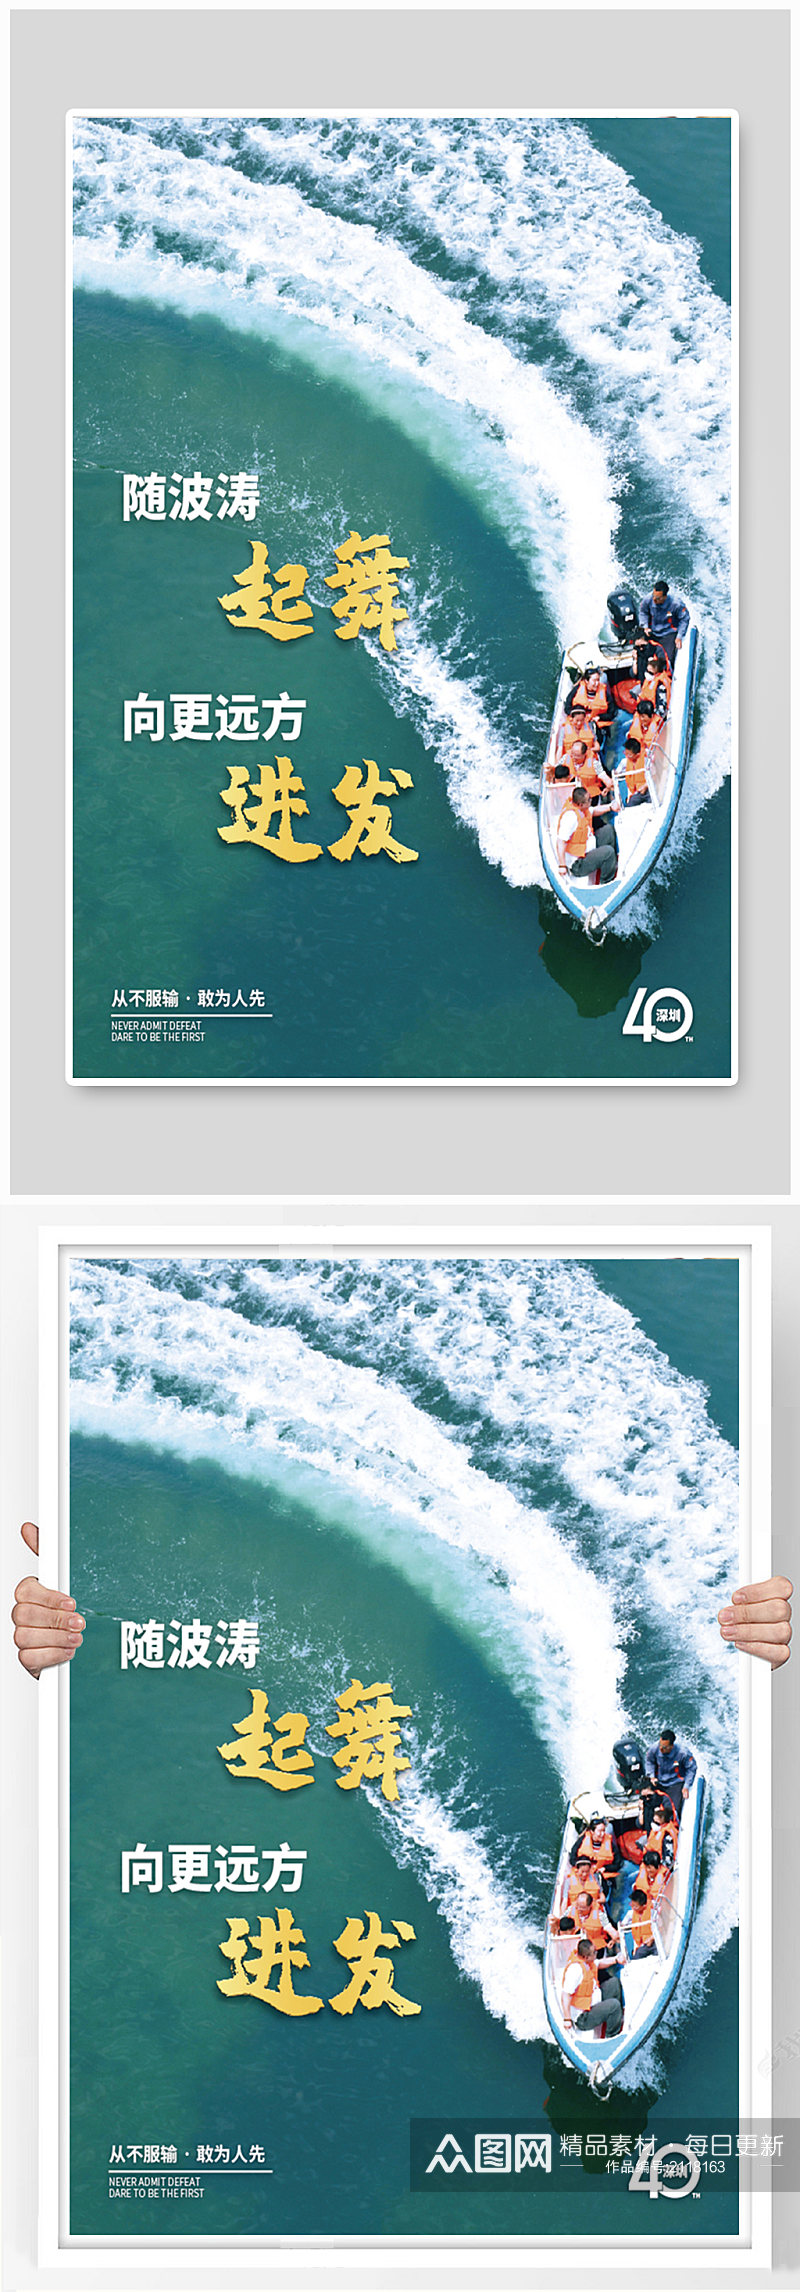 深圳城市宣传系列海报素材